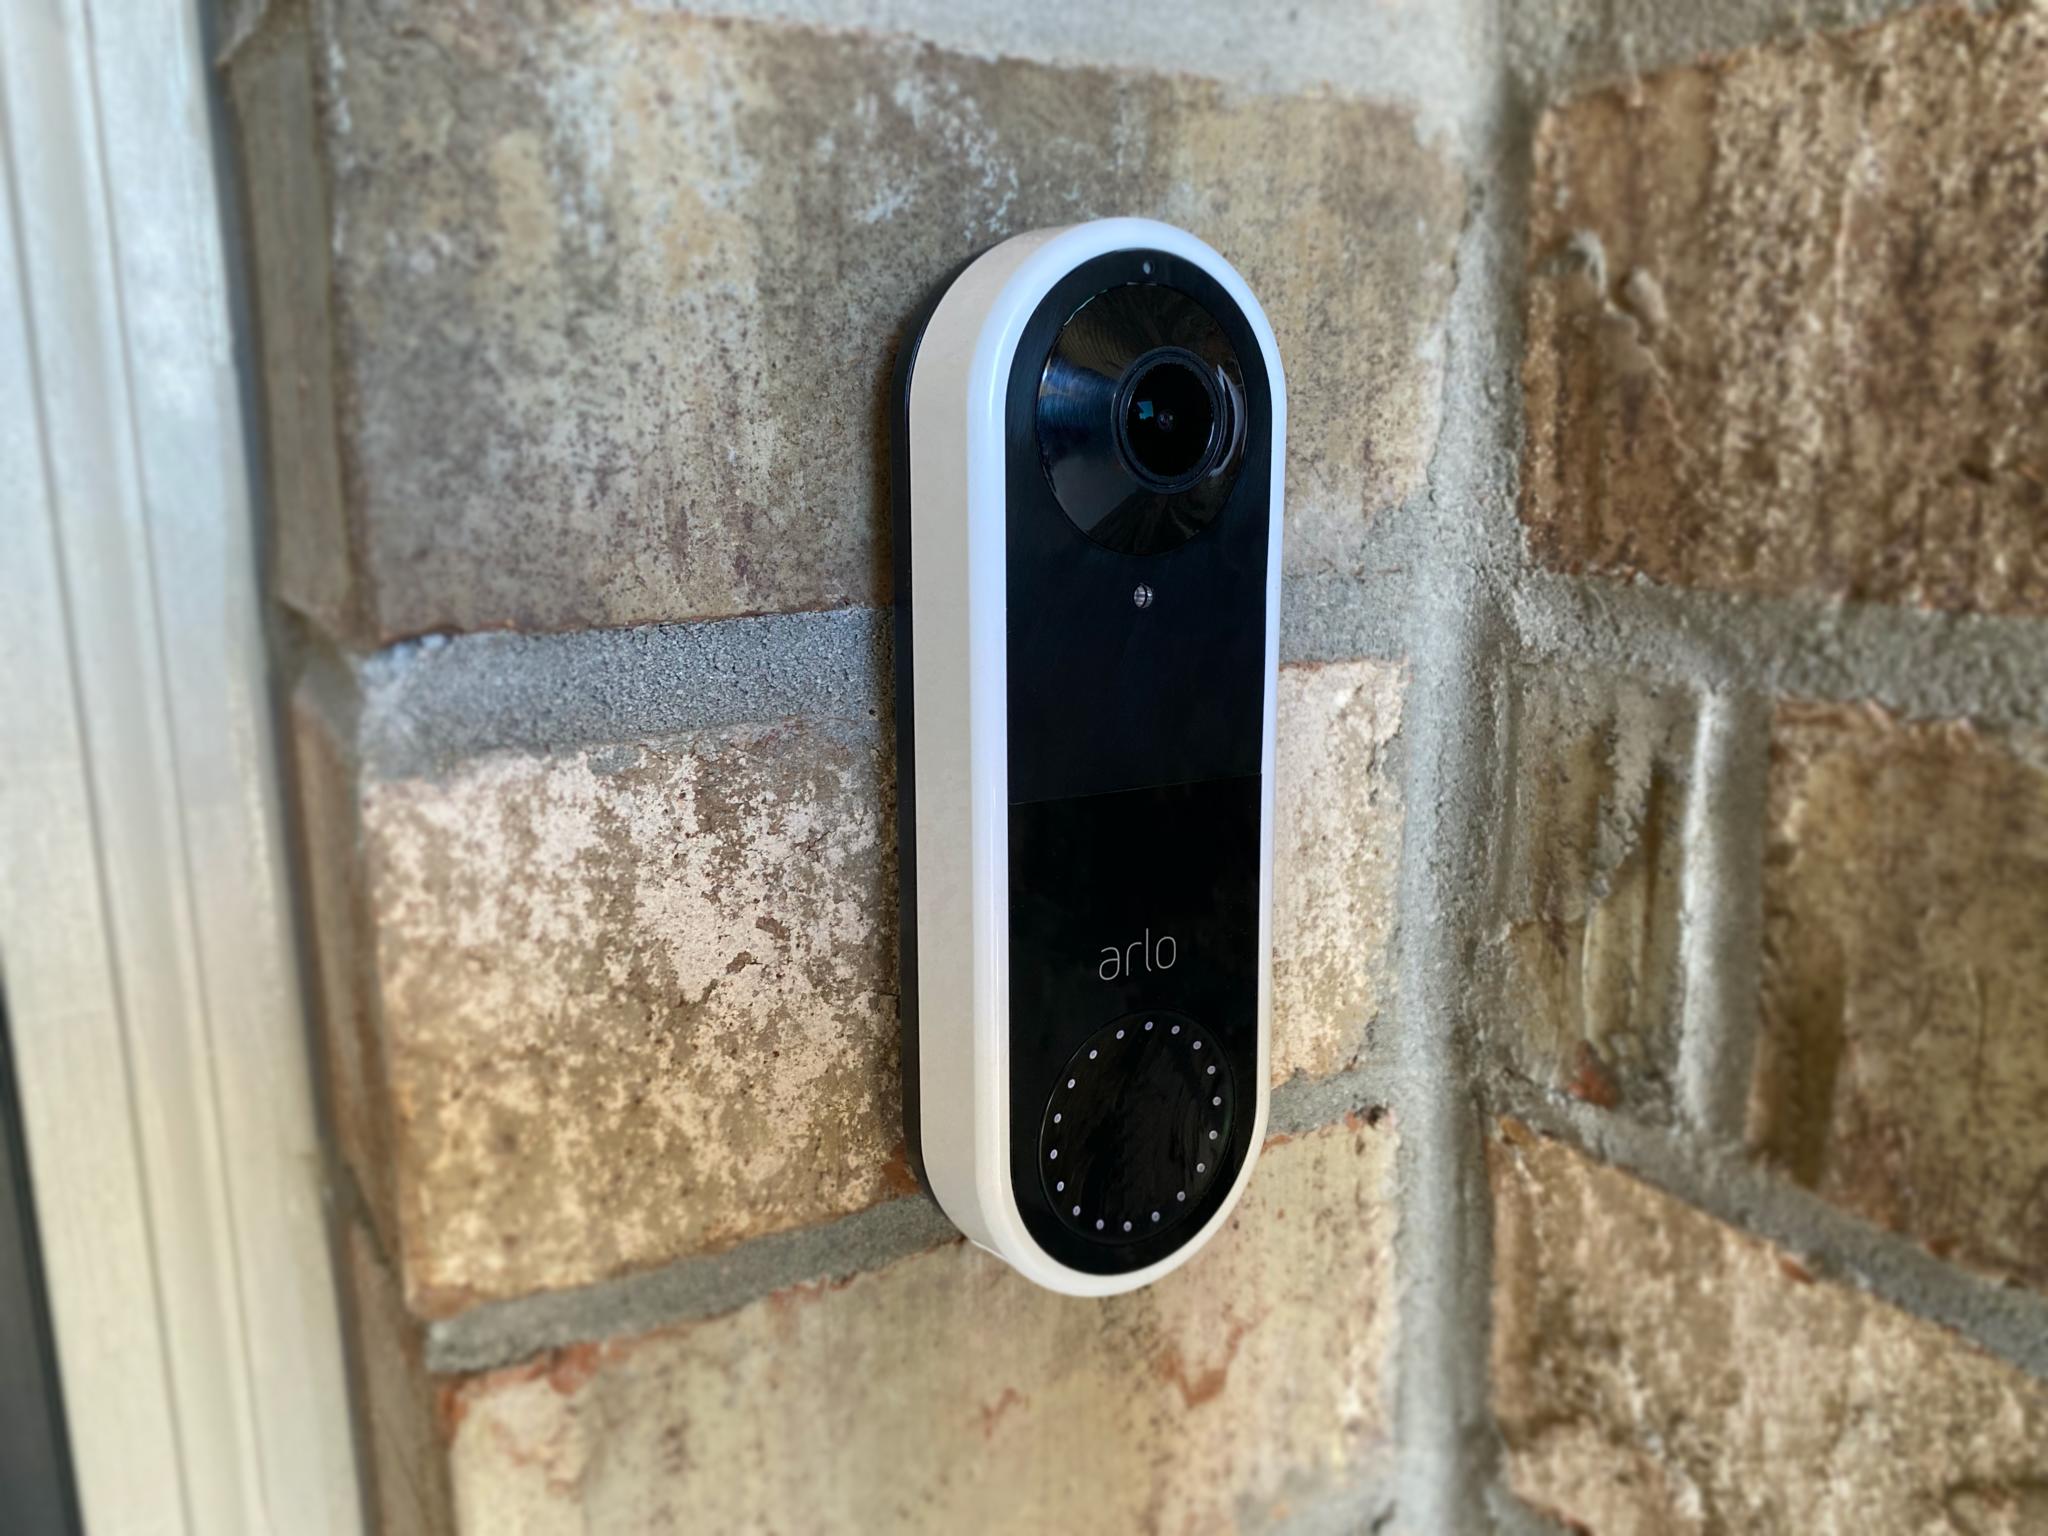 Arlo Video Doorbell installed in an outdoor setting